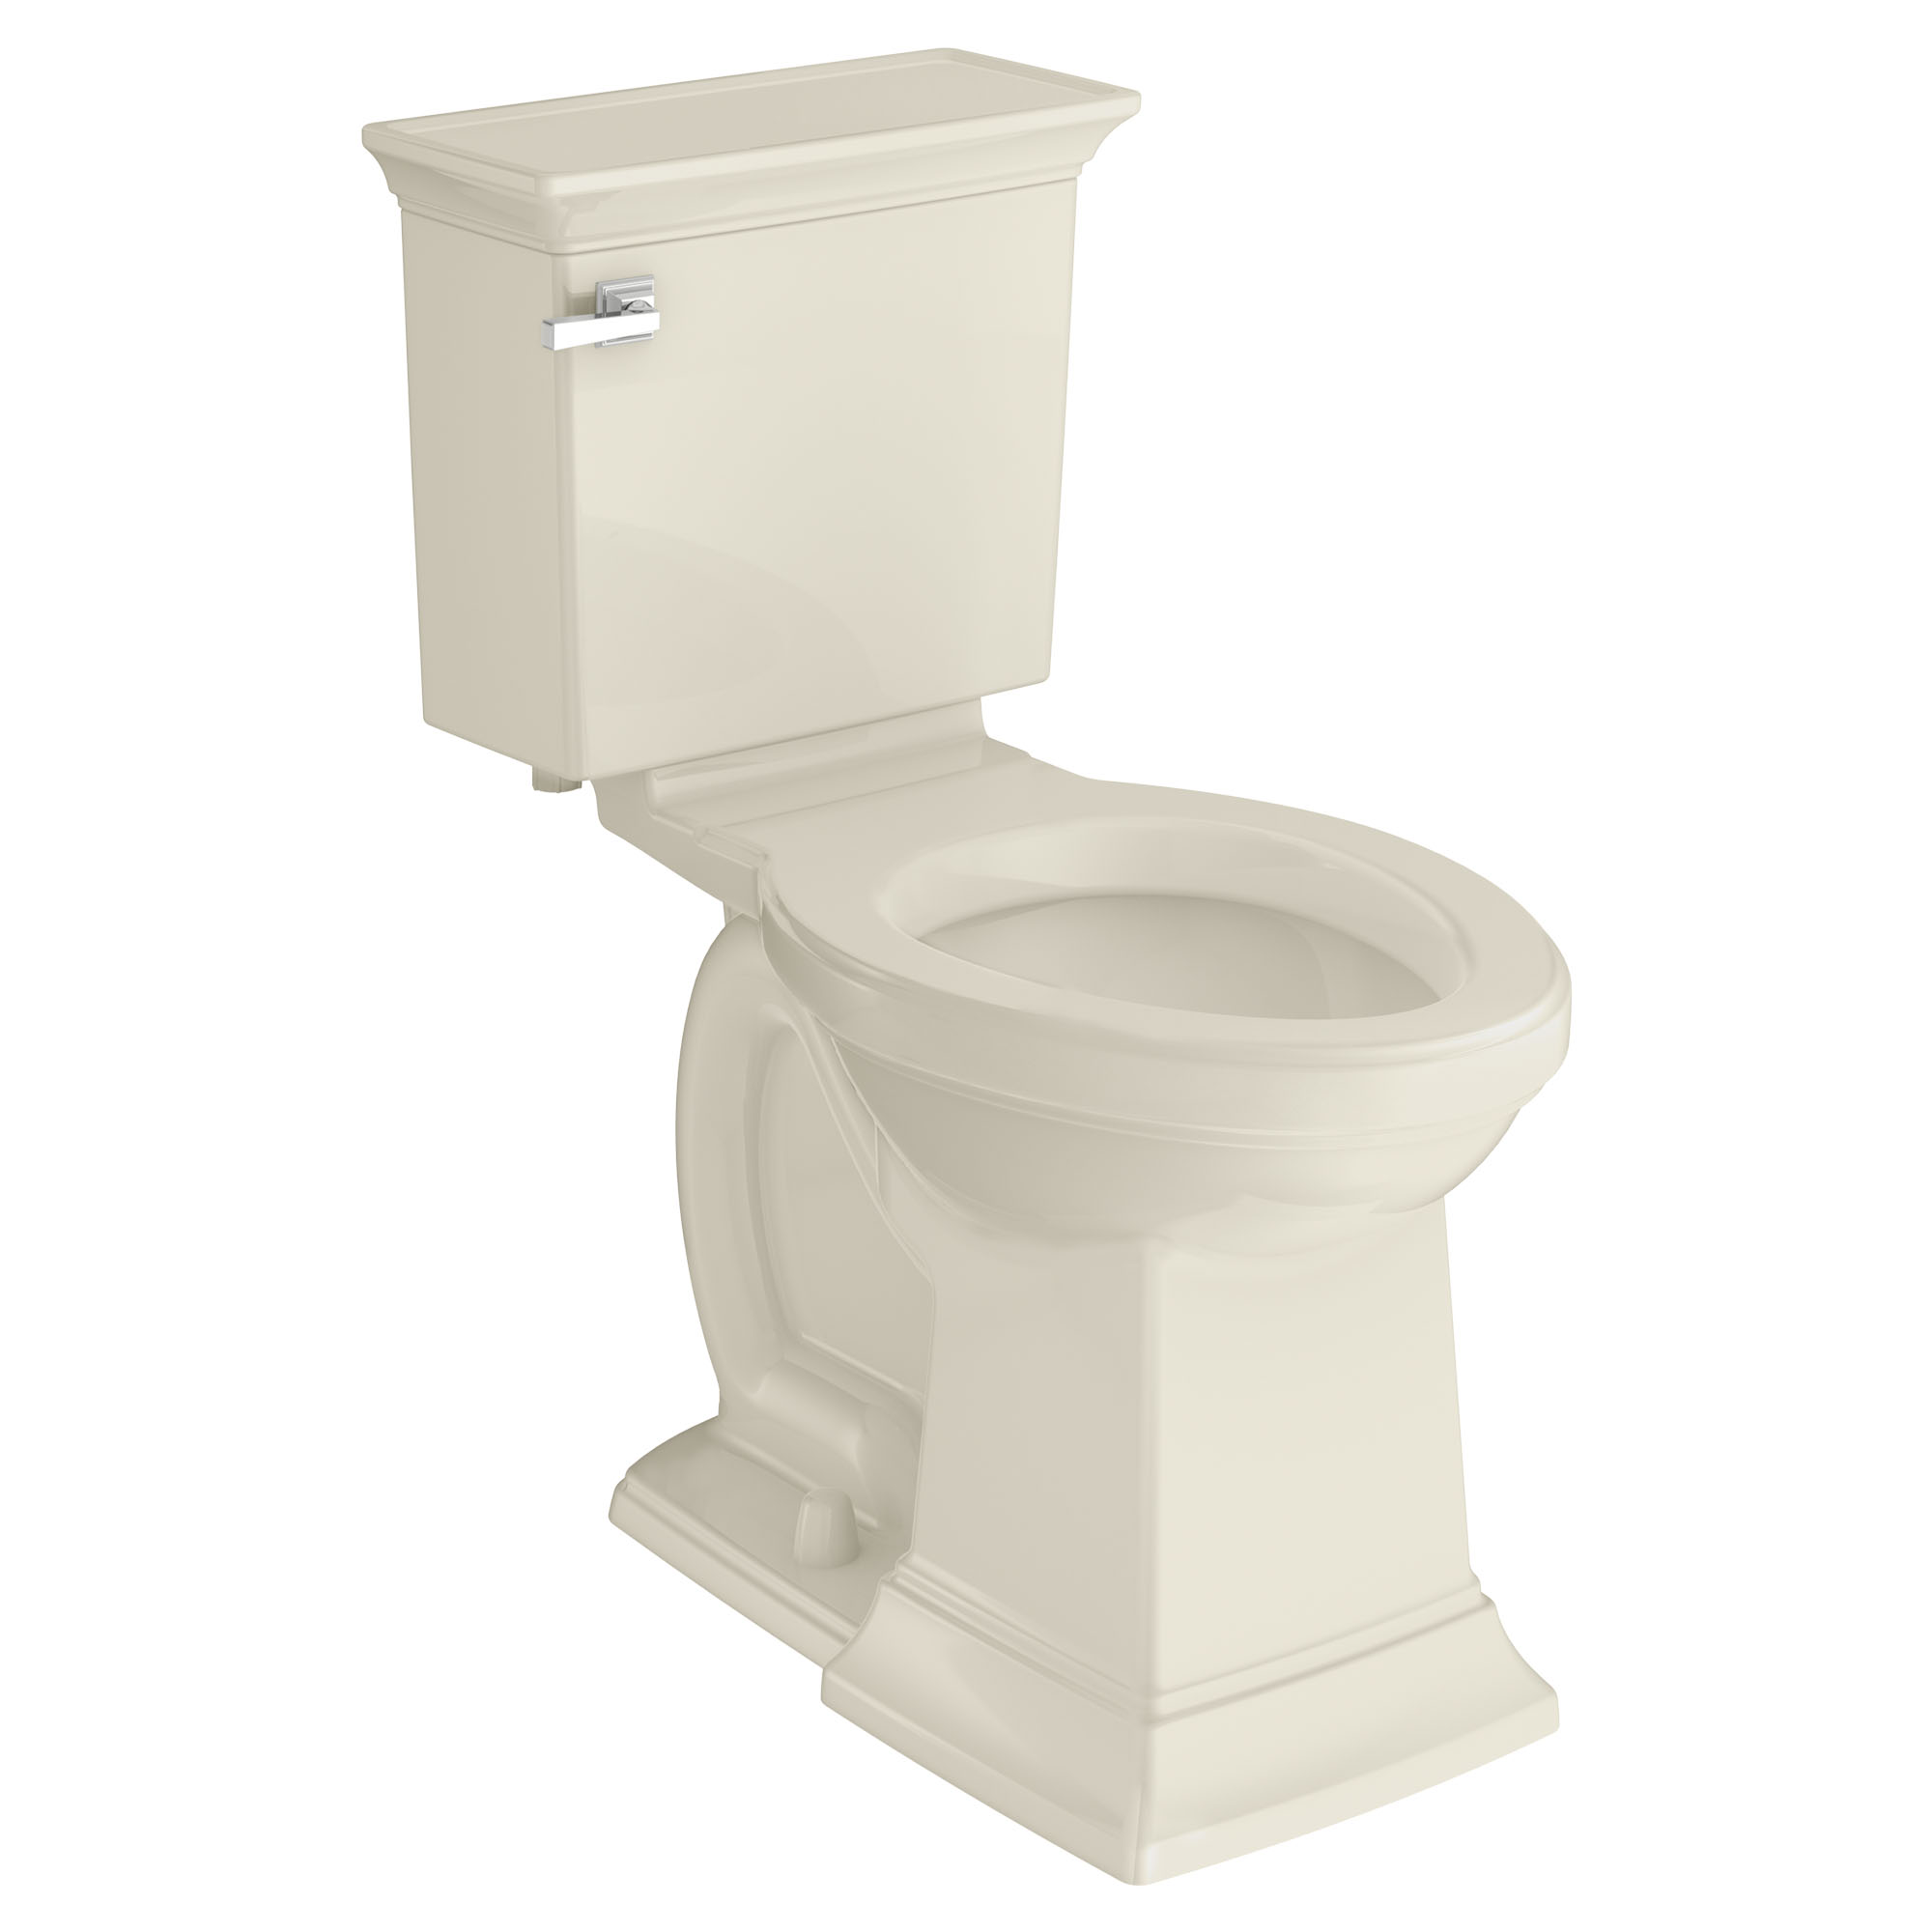 Toilette Town Square S, 2 pièces, 1,28 gpc/4,8 lpc, à cuvette allongée à hauteur de chaise, sans siège